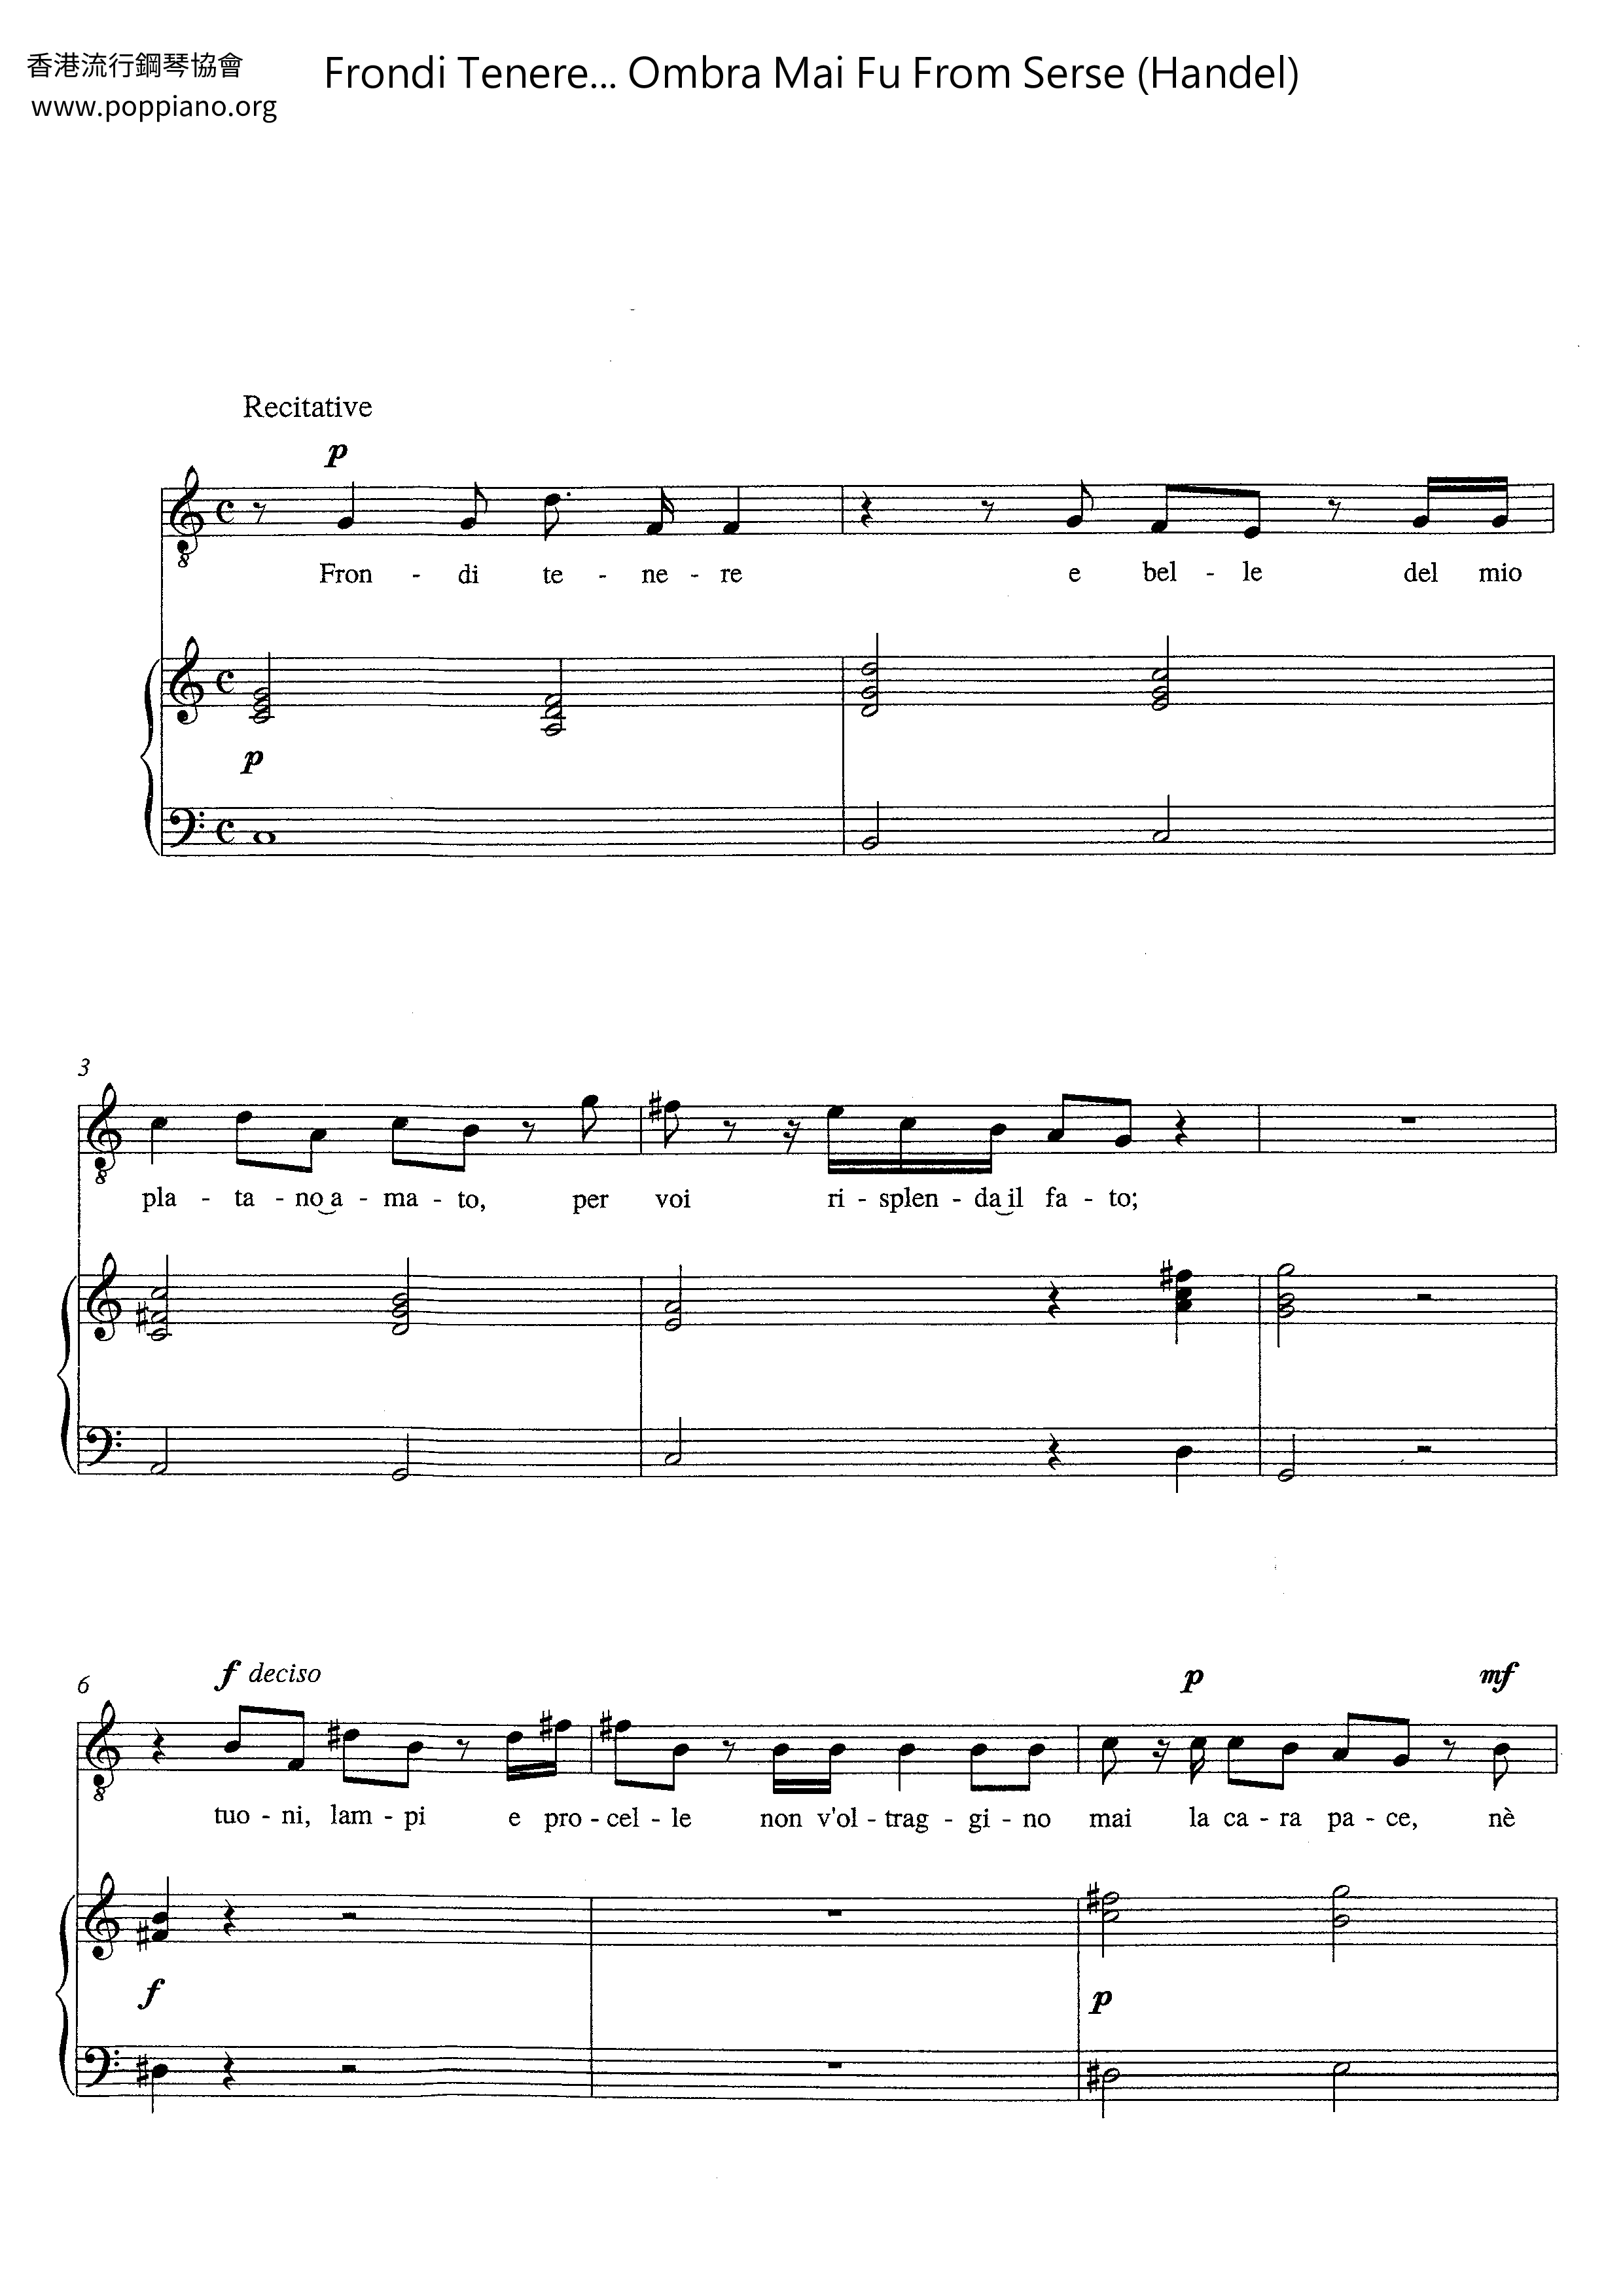 Frondi Tenere... Ombra Mai Fu From Serse (Handel) Score